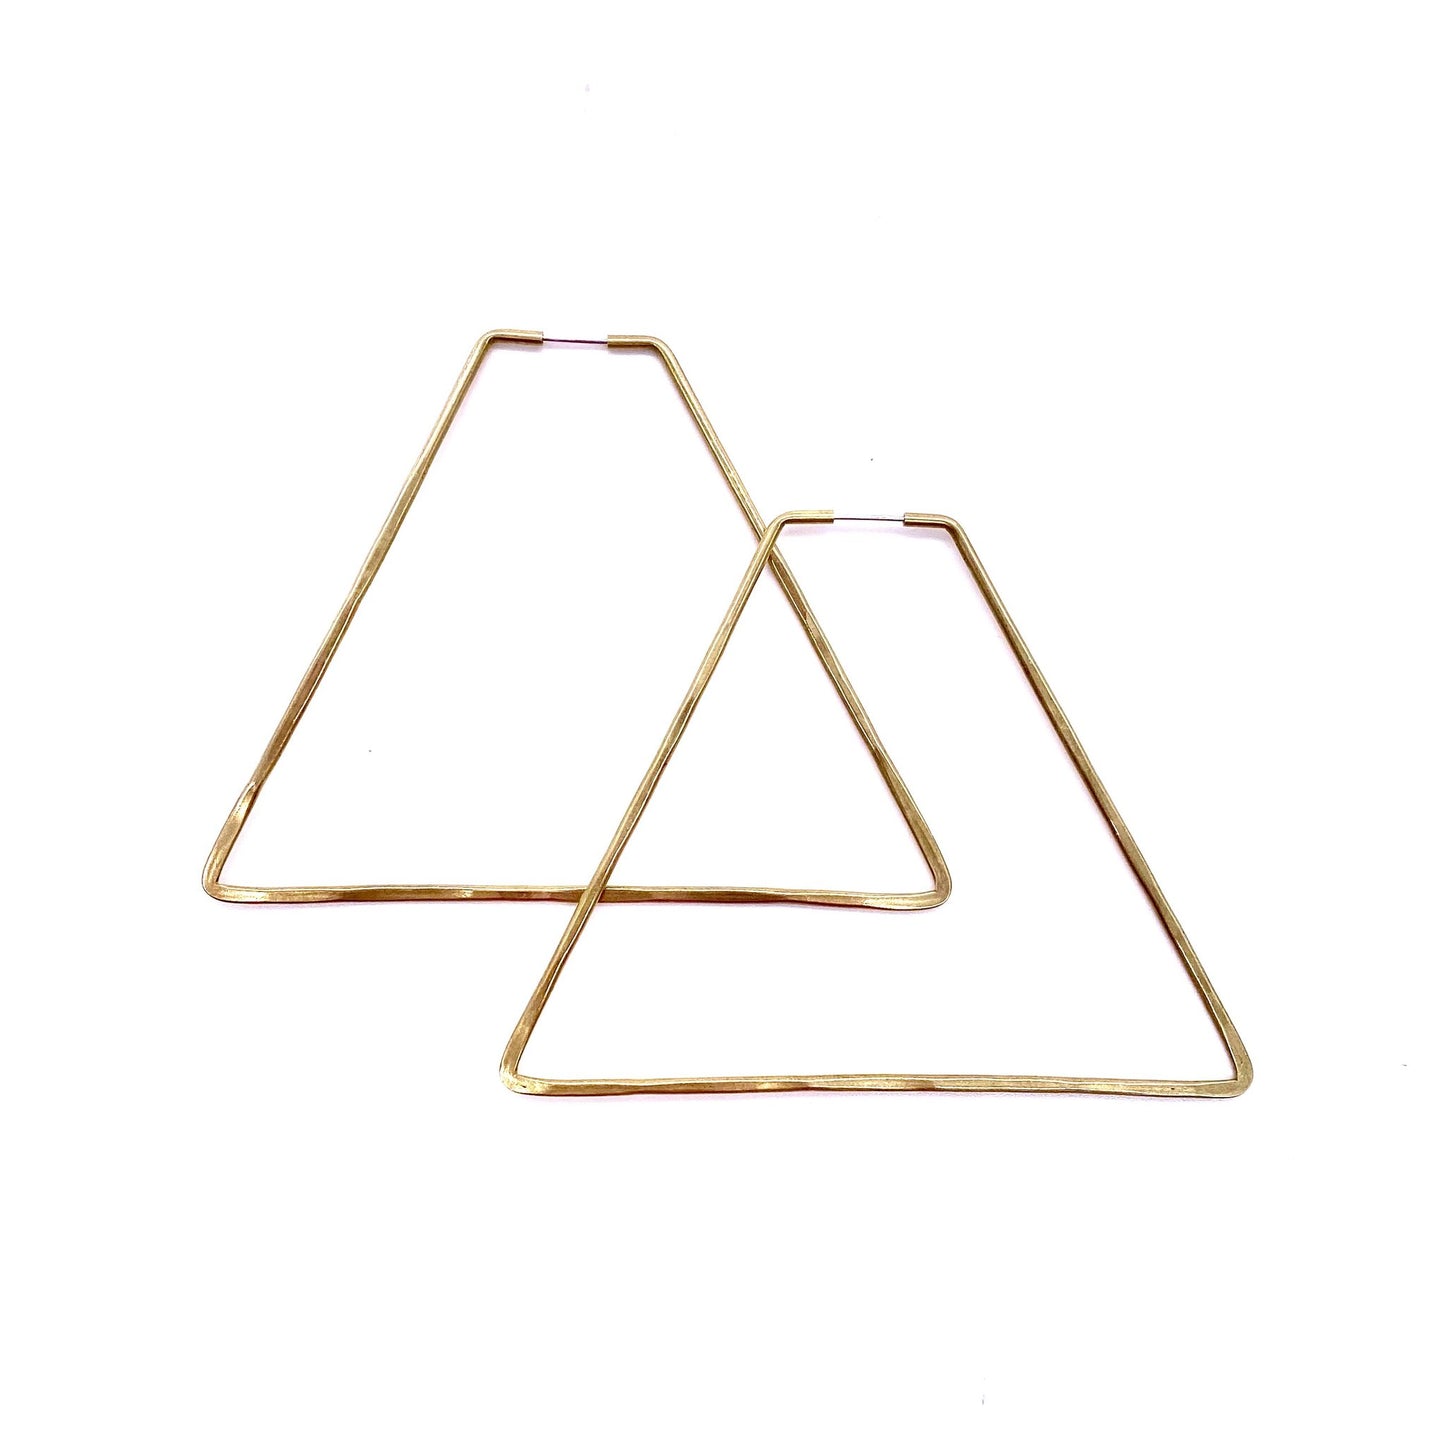 Brass geometric hoop earrings in pyramid shape.